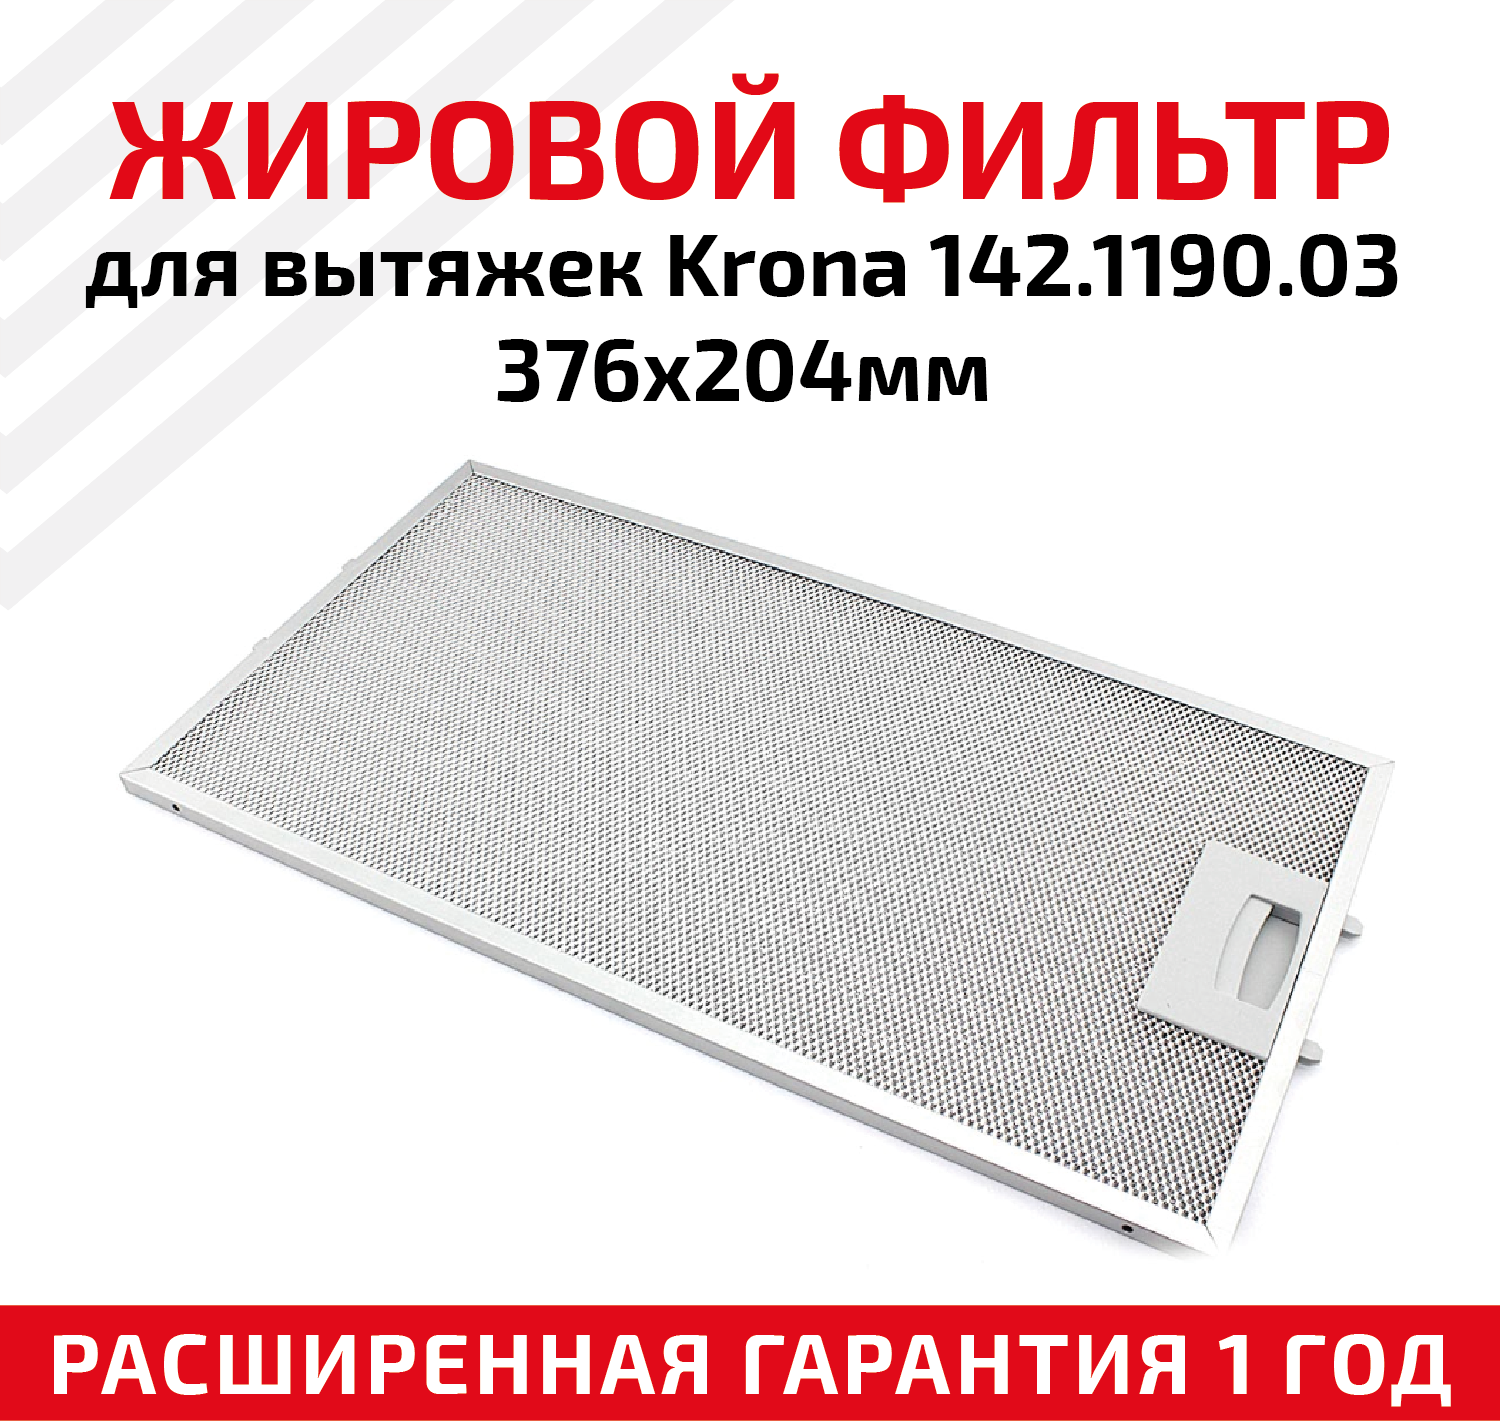 Жировой фильтр (кассета) алюминиевый (металлический) рамочный для кухонных вытяжек Krona 142.1190.03, многоразовый, 376х204мм